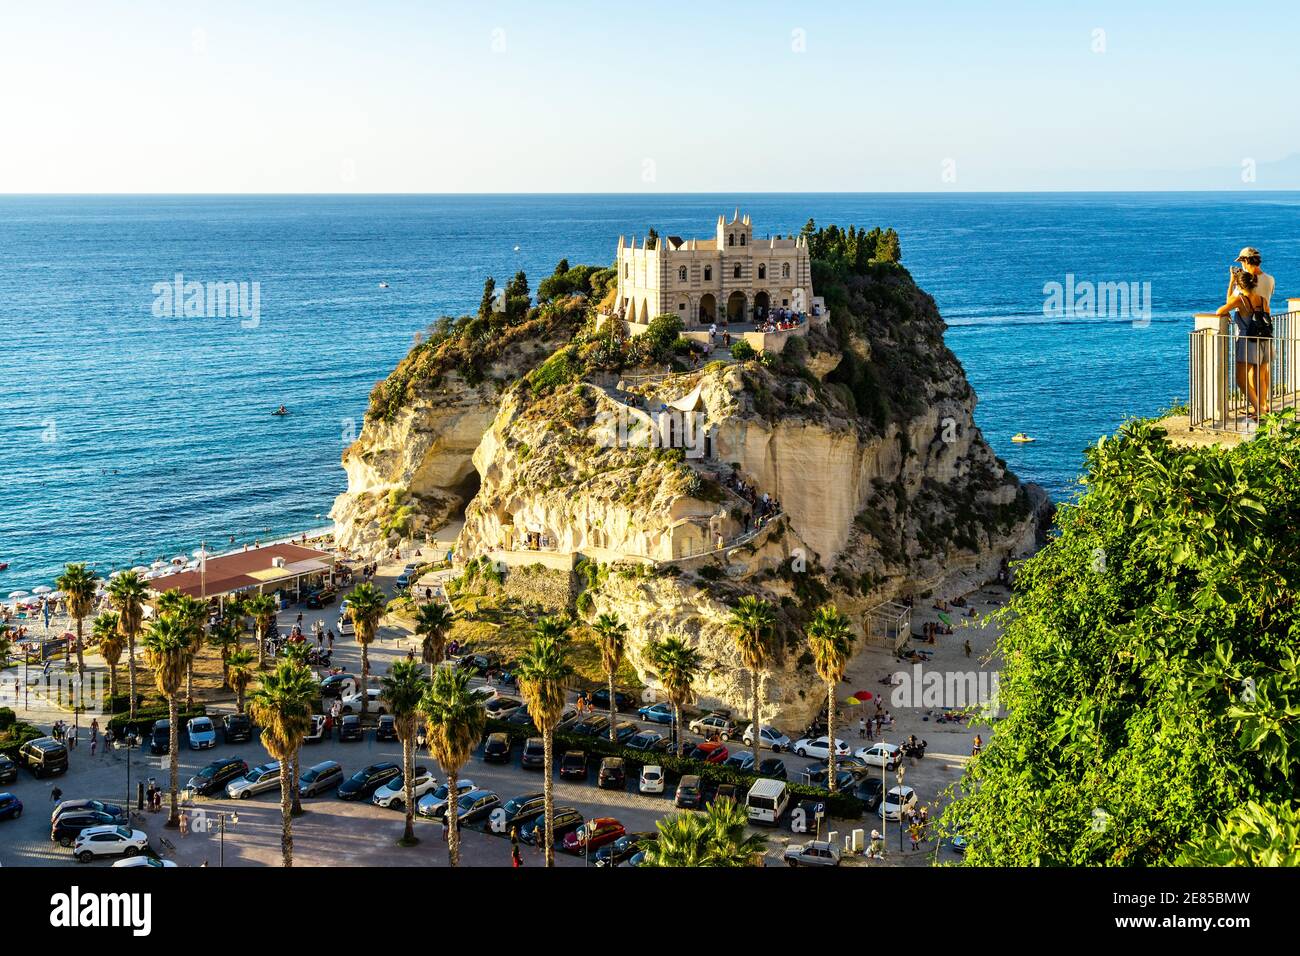 Le sanctuaire emblématique de Santa Maria dell'Isola à Tropea, situé sur un rocher pittoresque surplombant la mer Tyrrhénienne, Calabre, Italie Banque D'Images